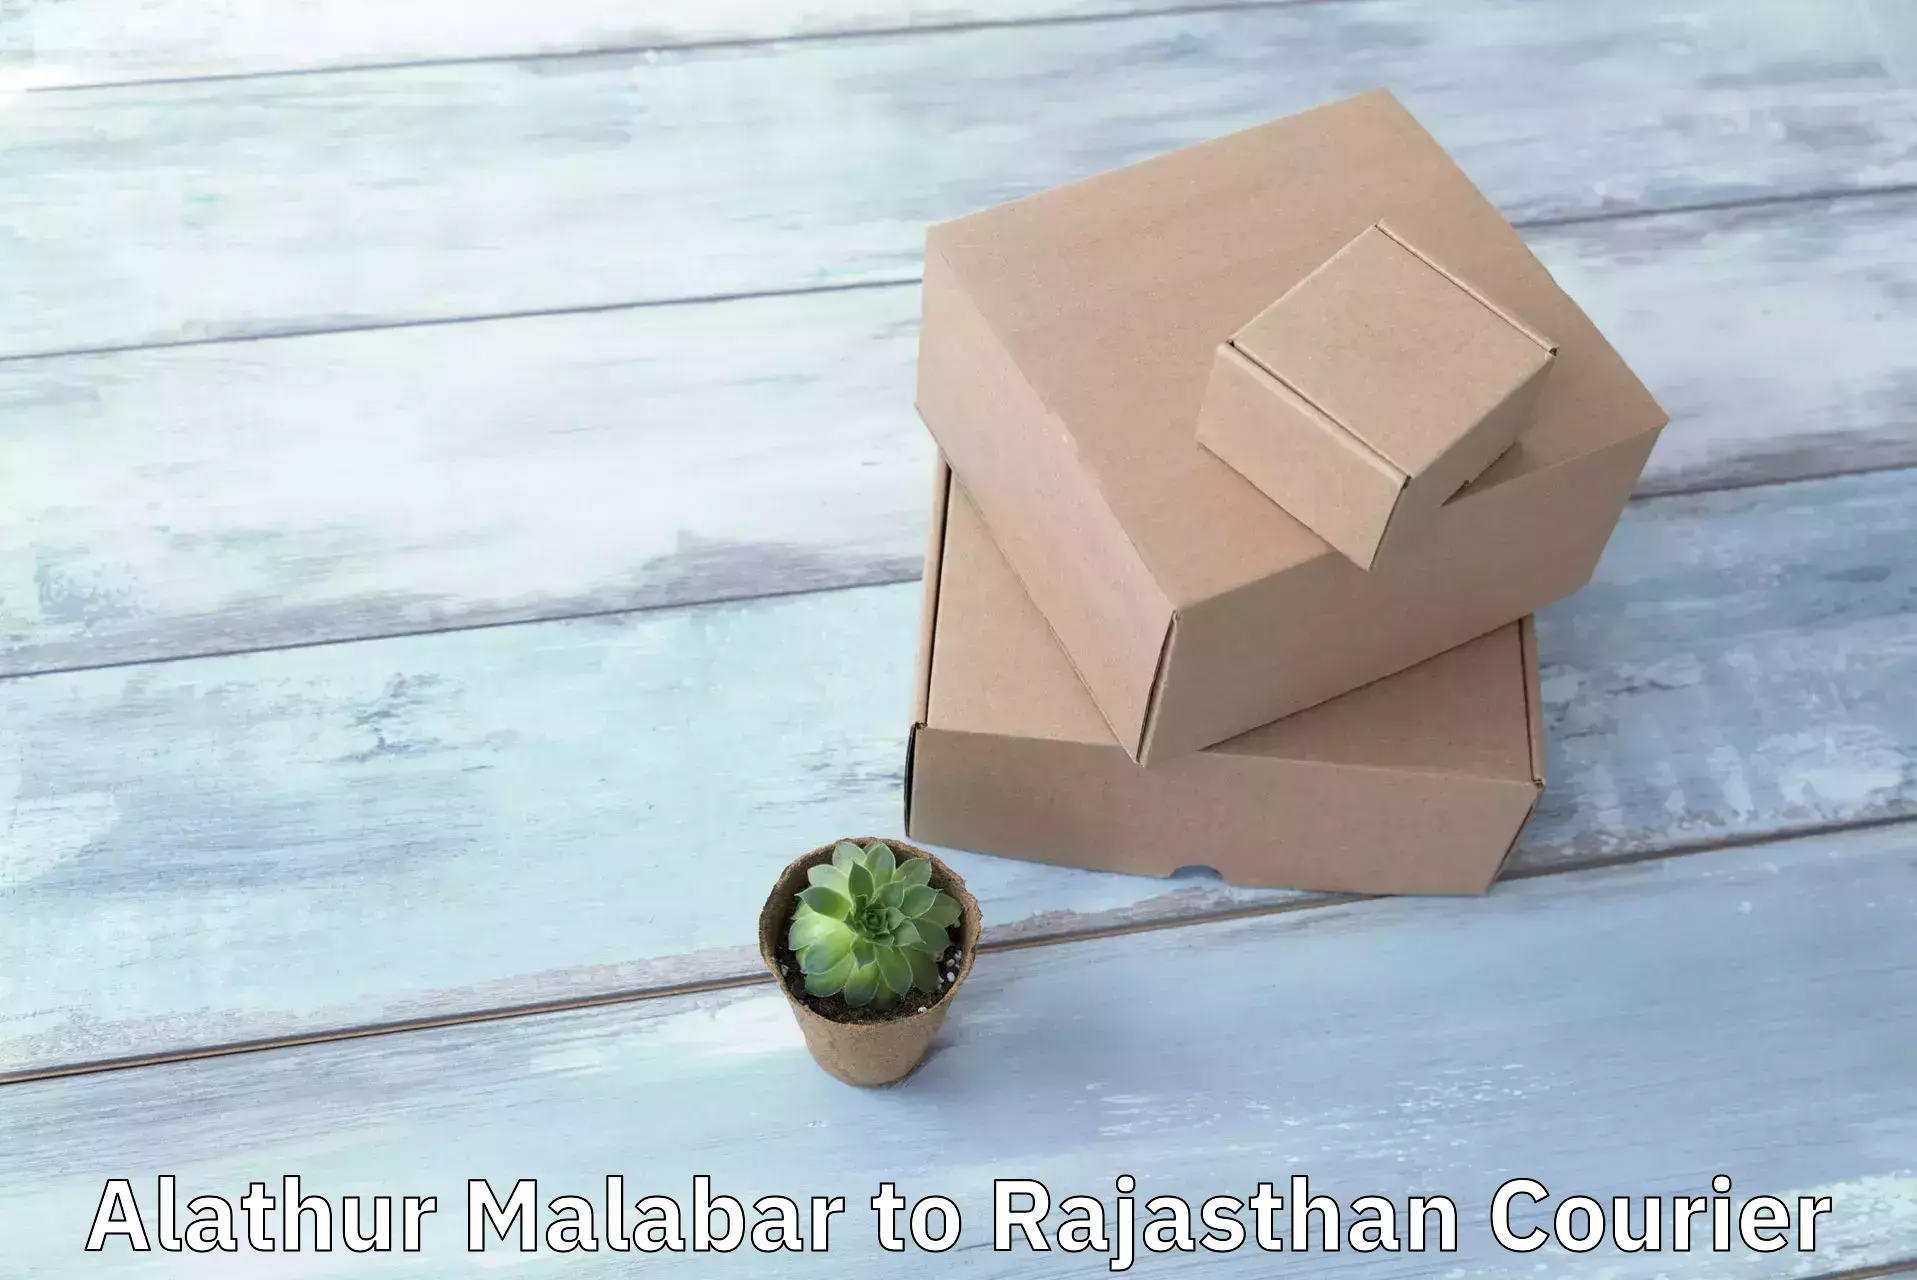 Speedy delivery service Alathur Malabar to Sardarshahr